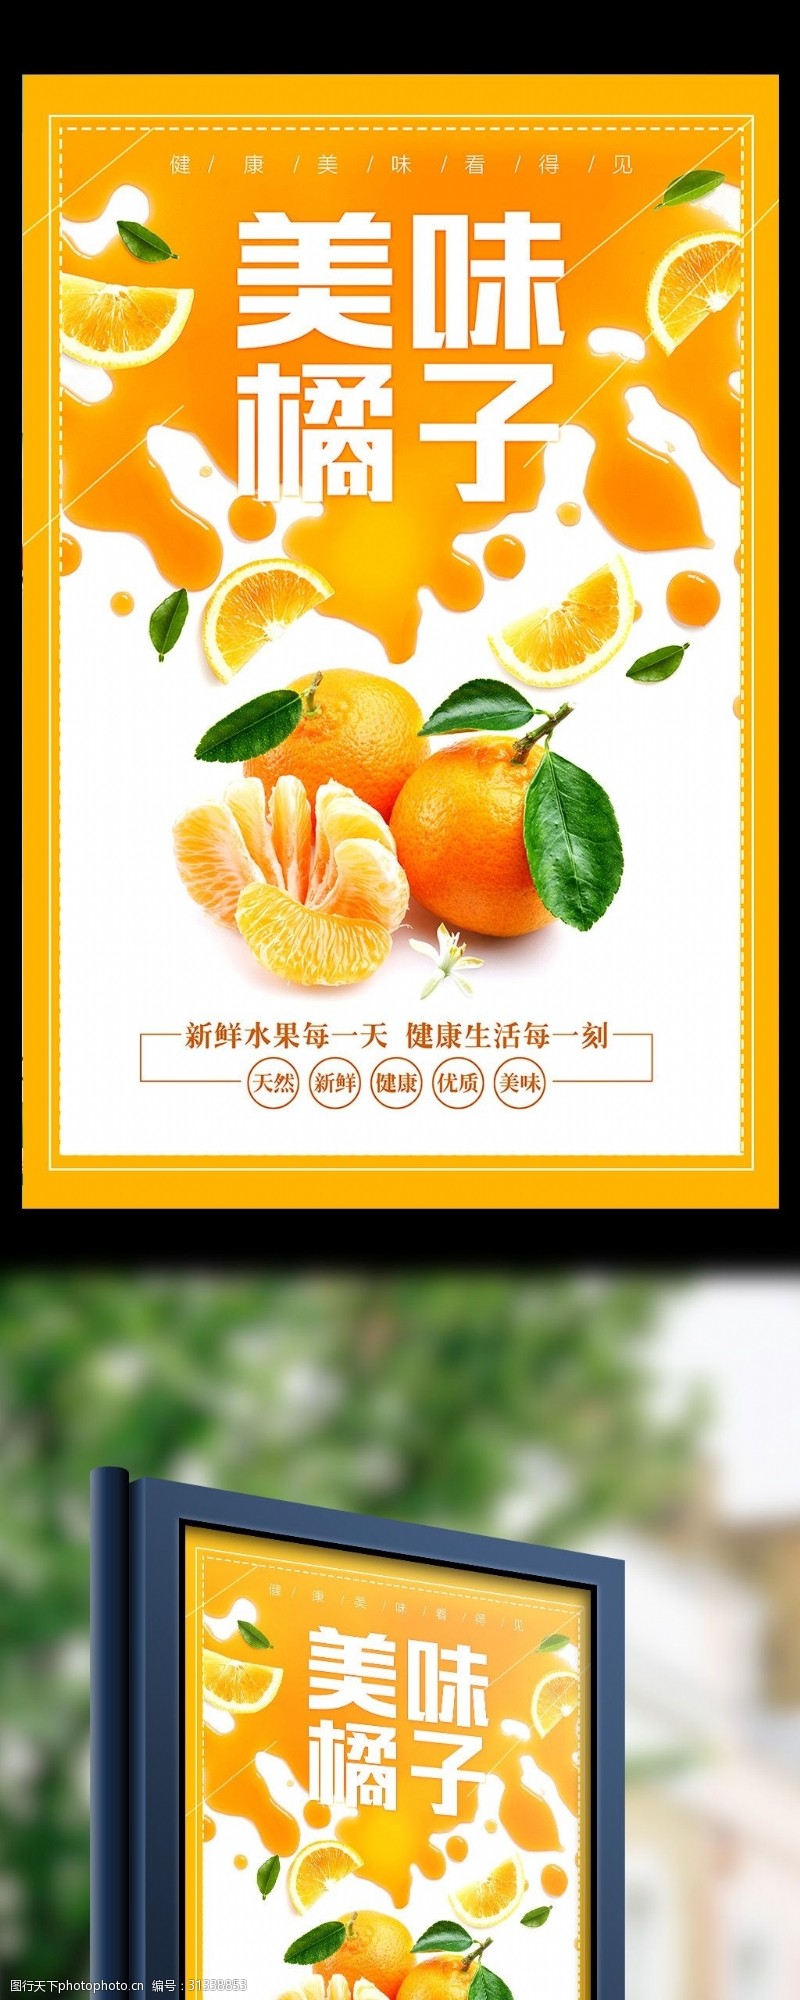 桔子2017年橙色美味橘子海报设计